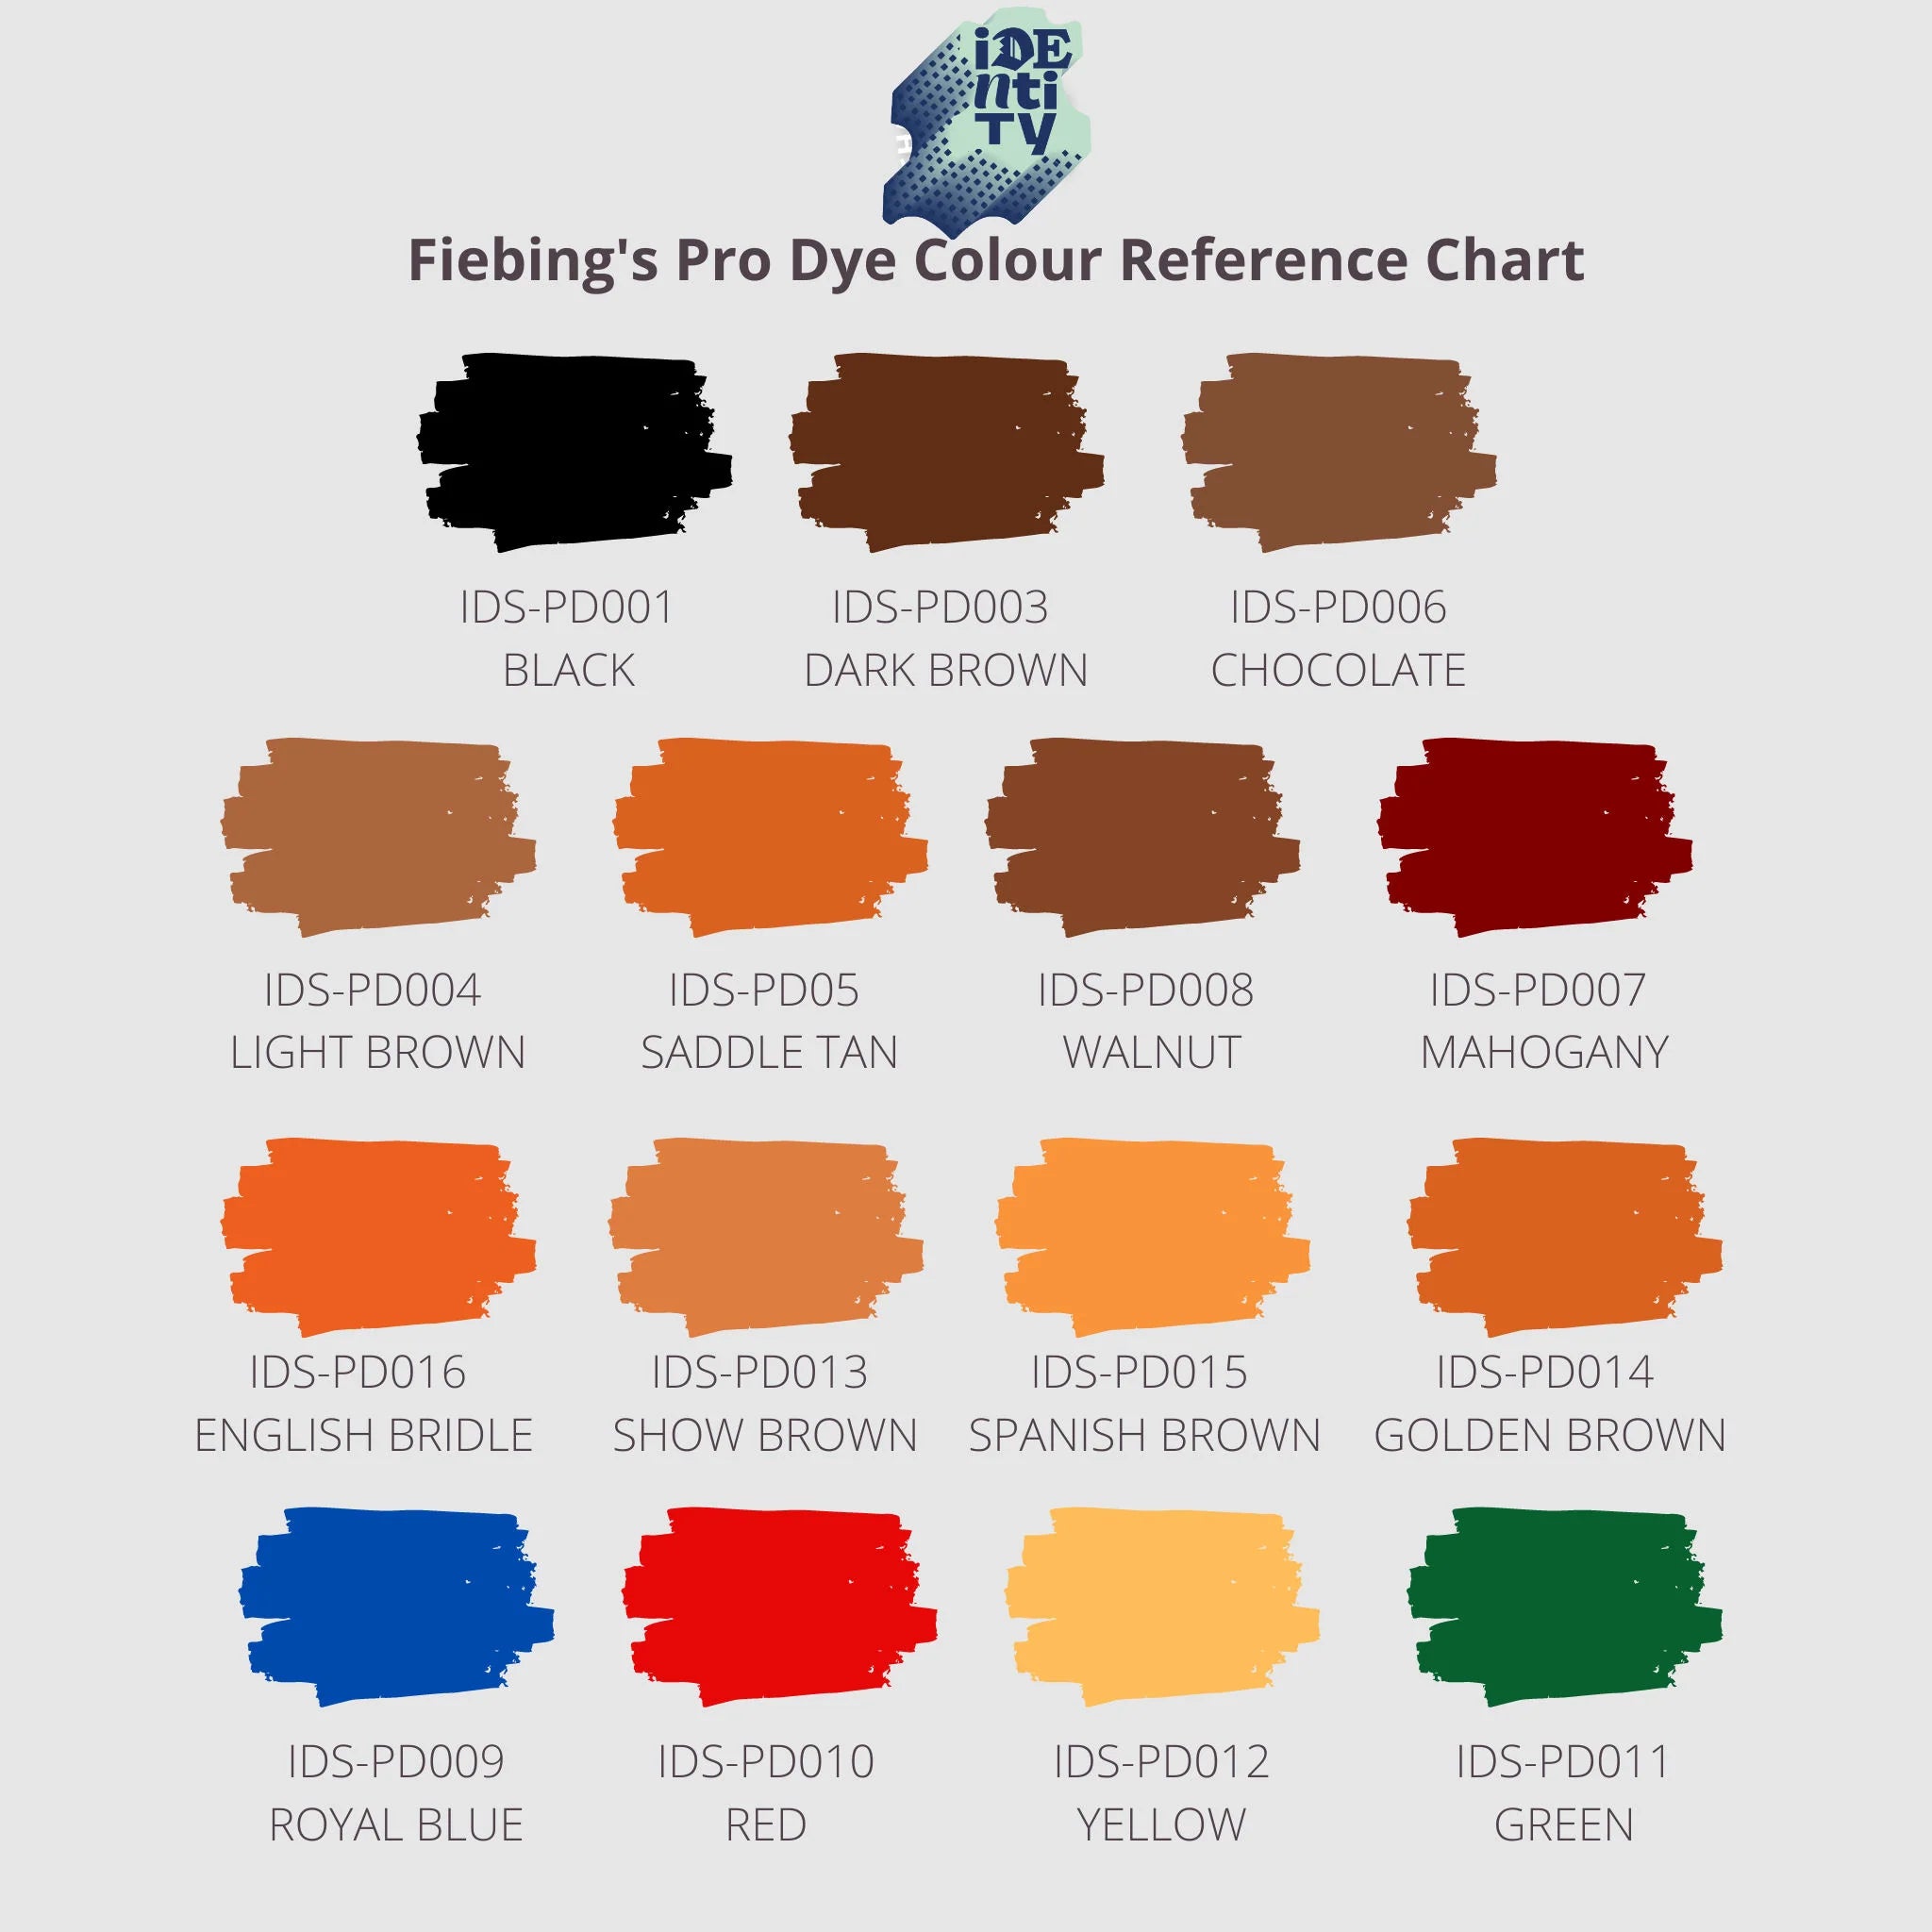 Fiebing's Fiebings Pro Dye